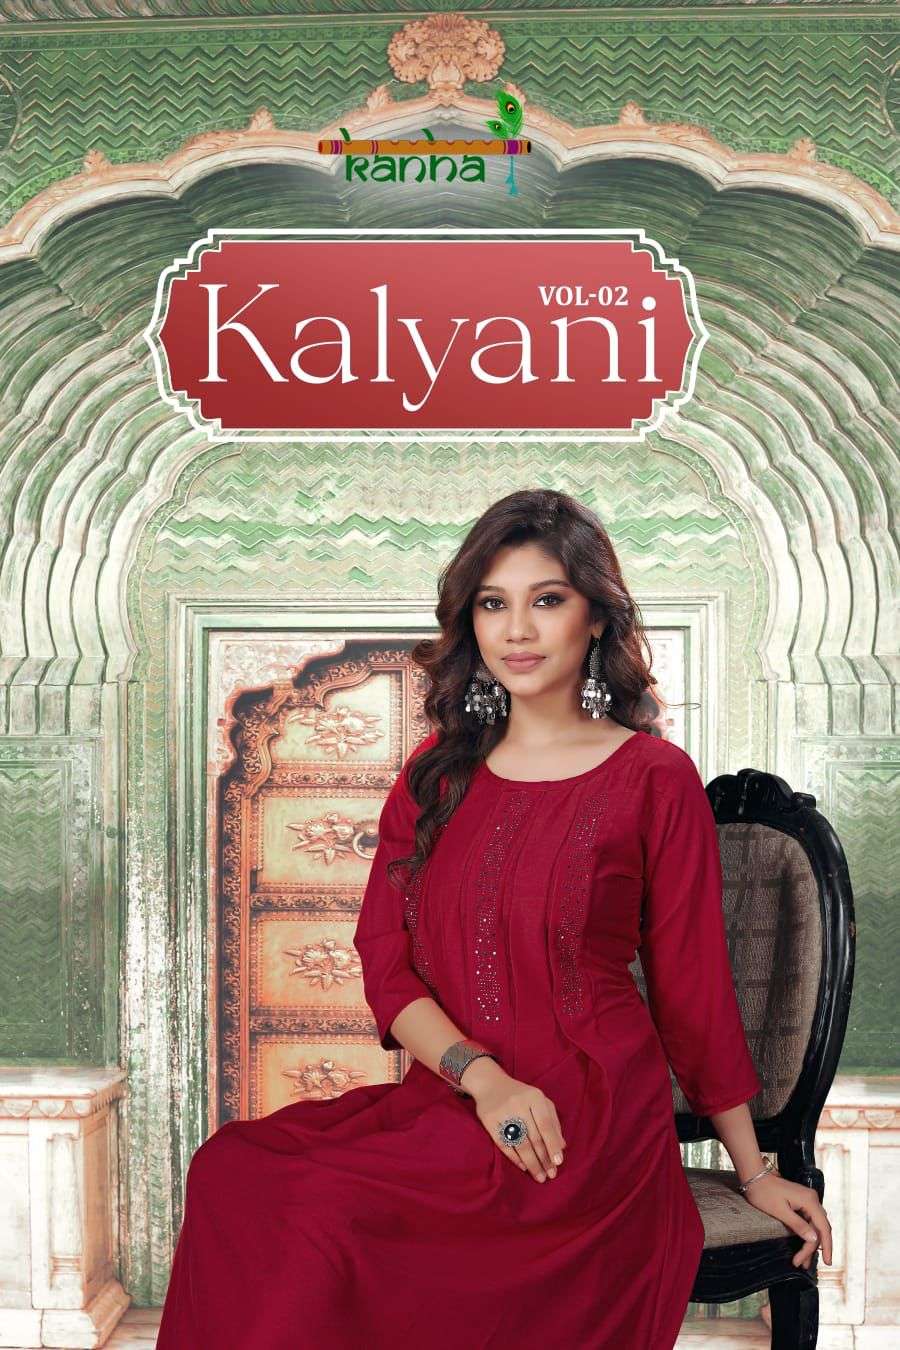 Kanha Kalyani Vol 2 Fancy Chinon Stylish Kurti new Designs